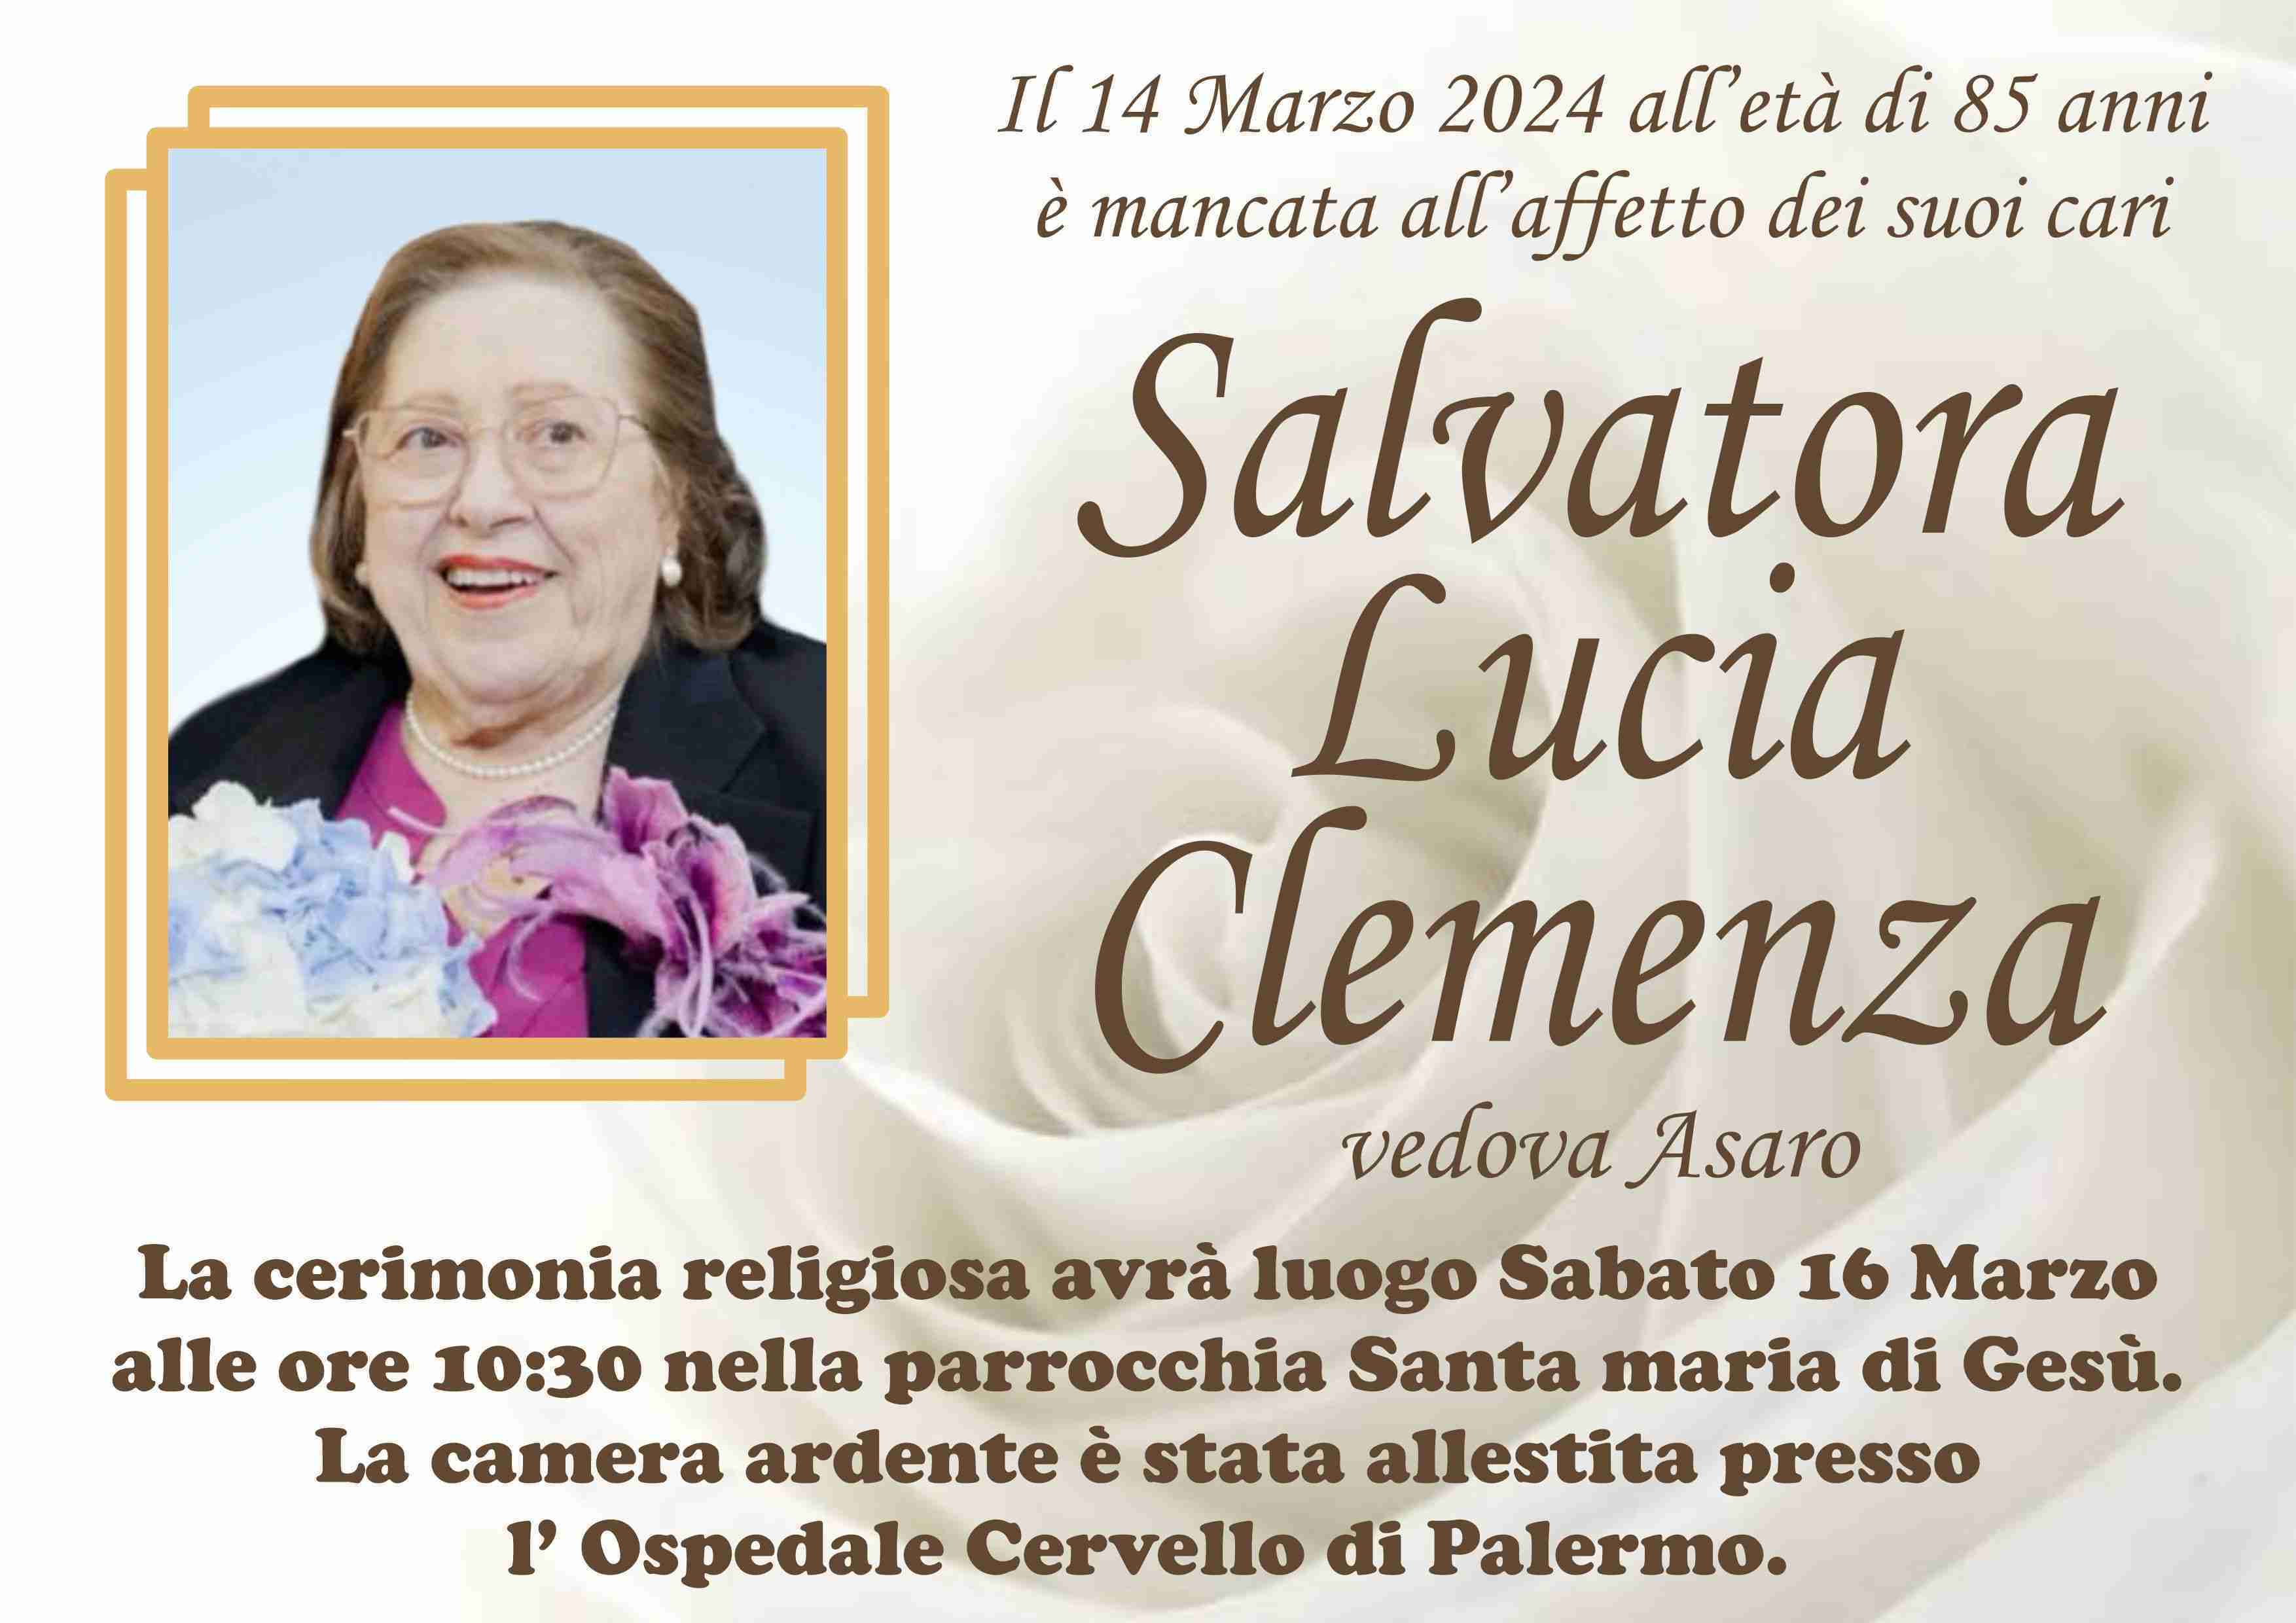 Salvatora Lucia Clemenza